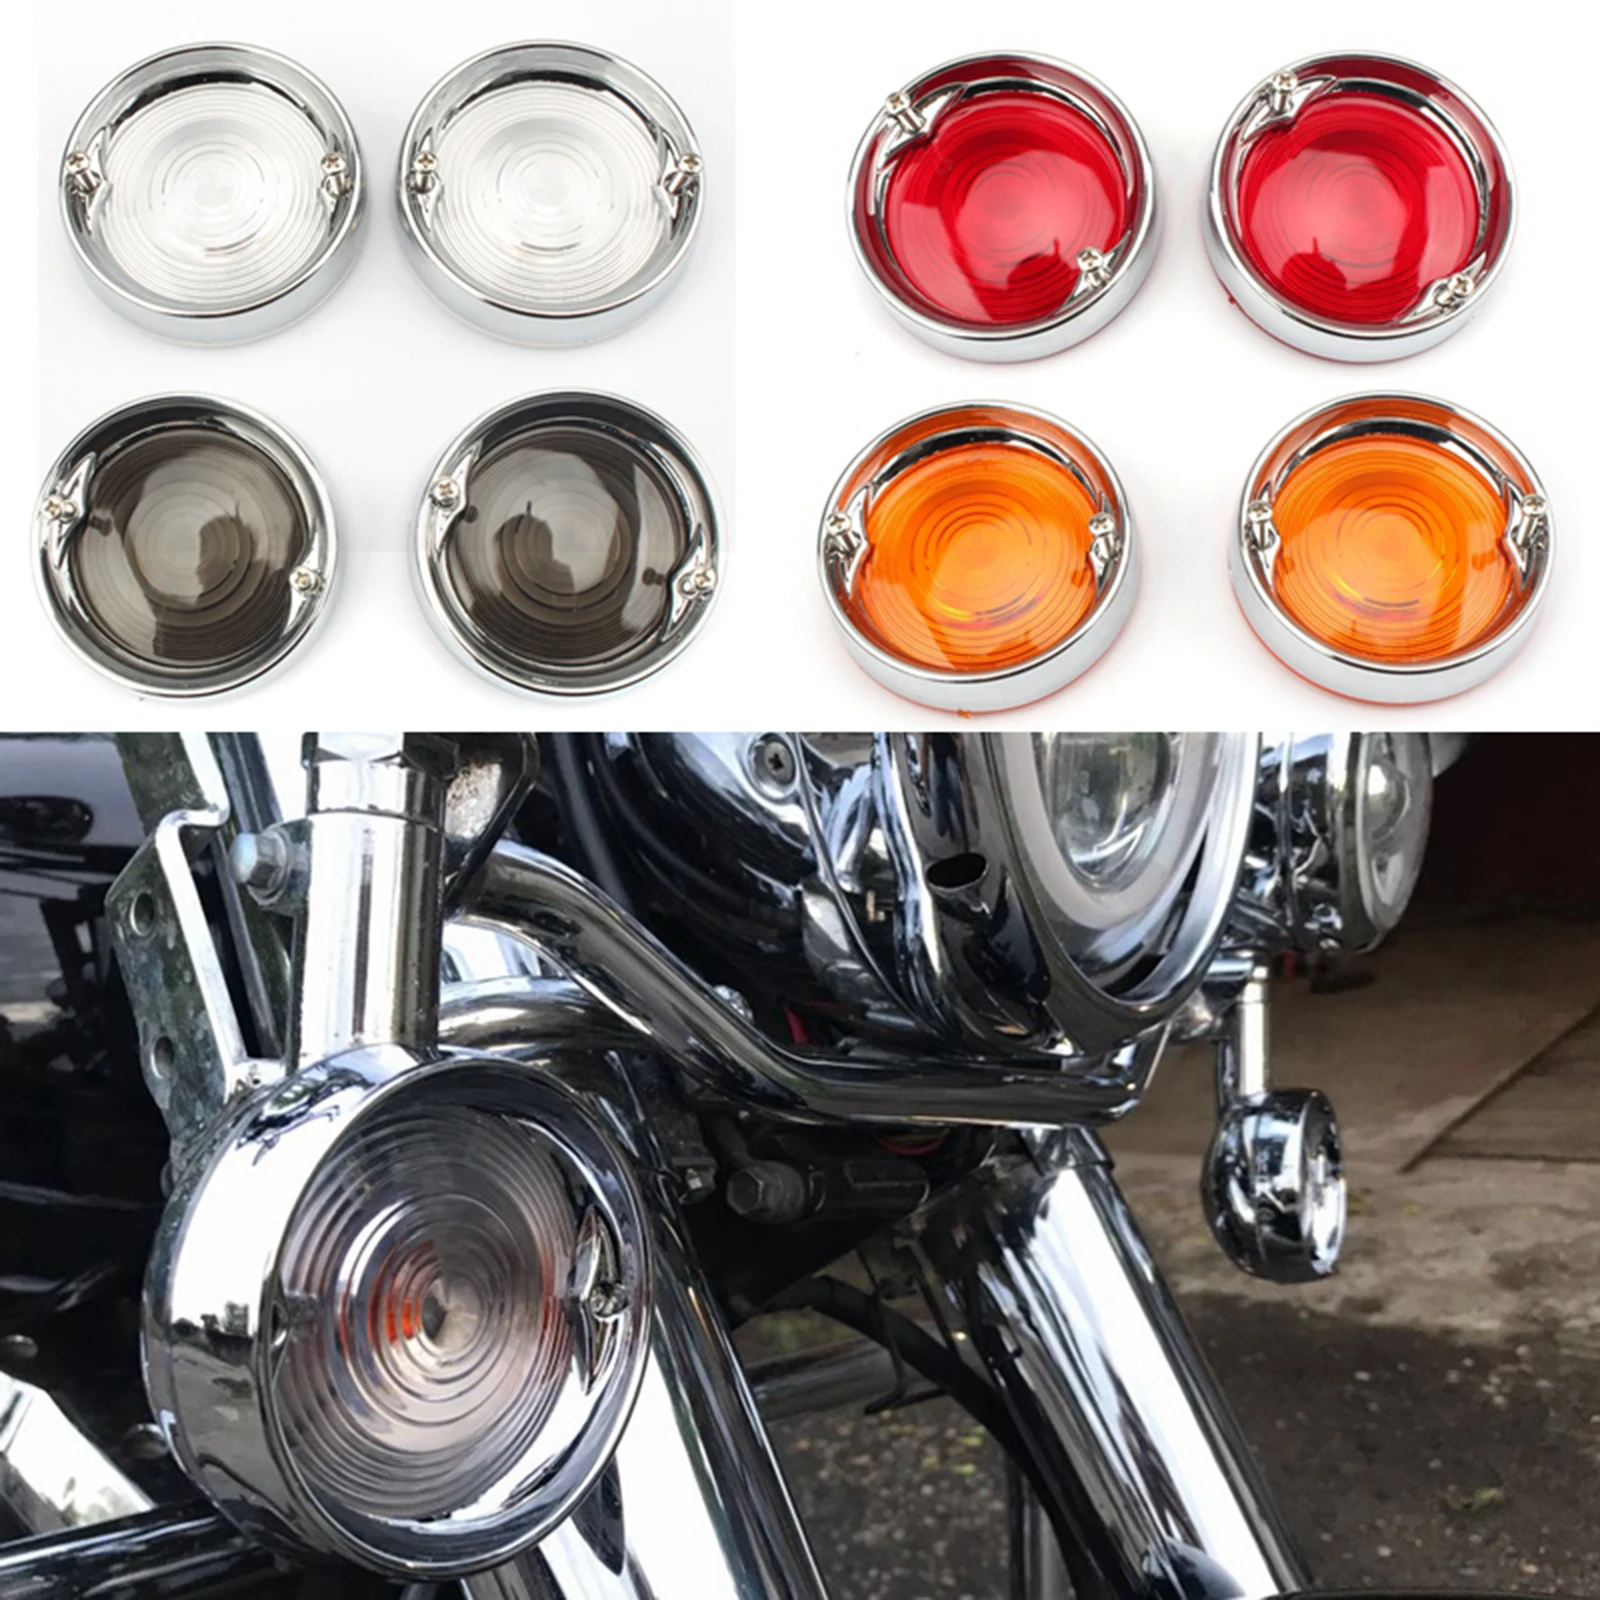 2Pcs Motorcycle Turn Signal Light Bezels Lens Cover Visor Trim Rings For Harley Touring